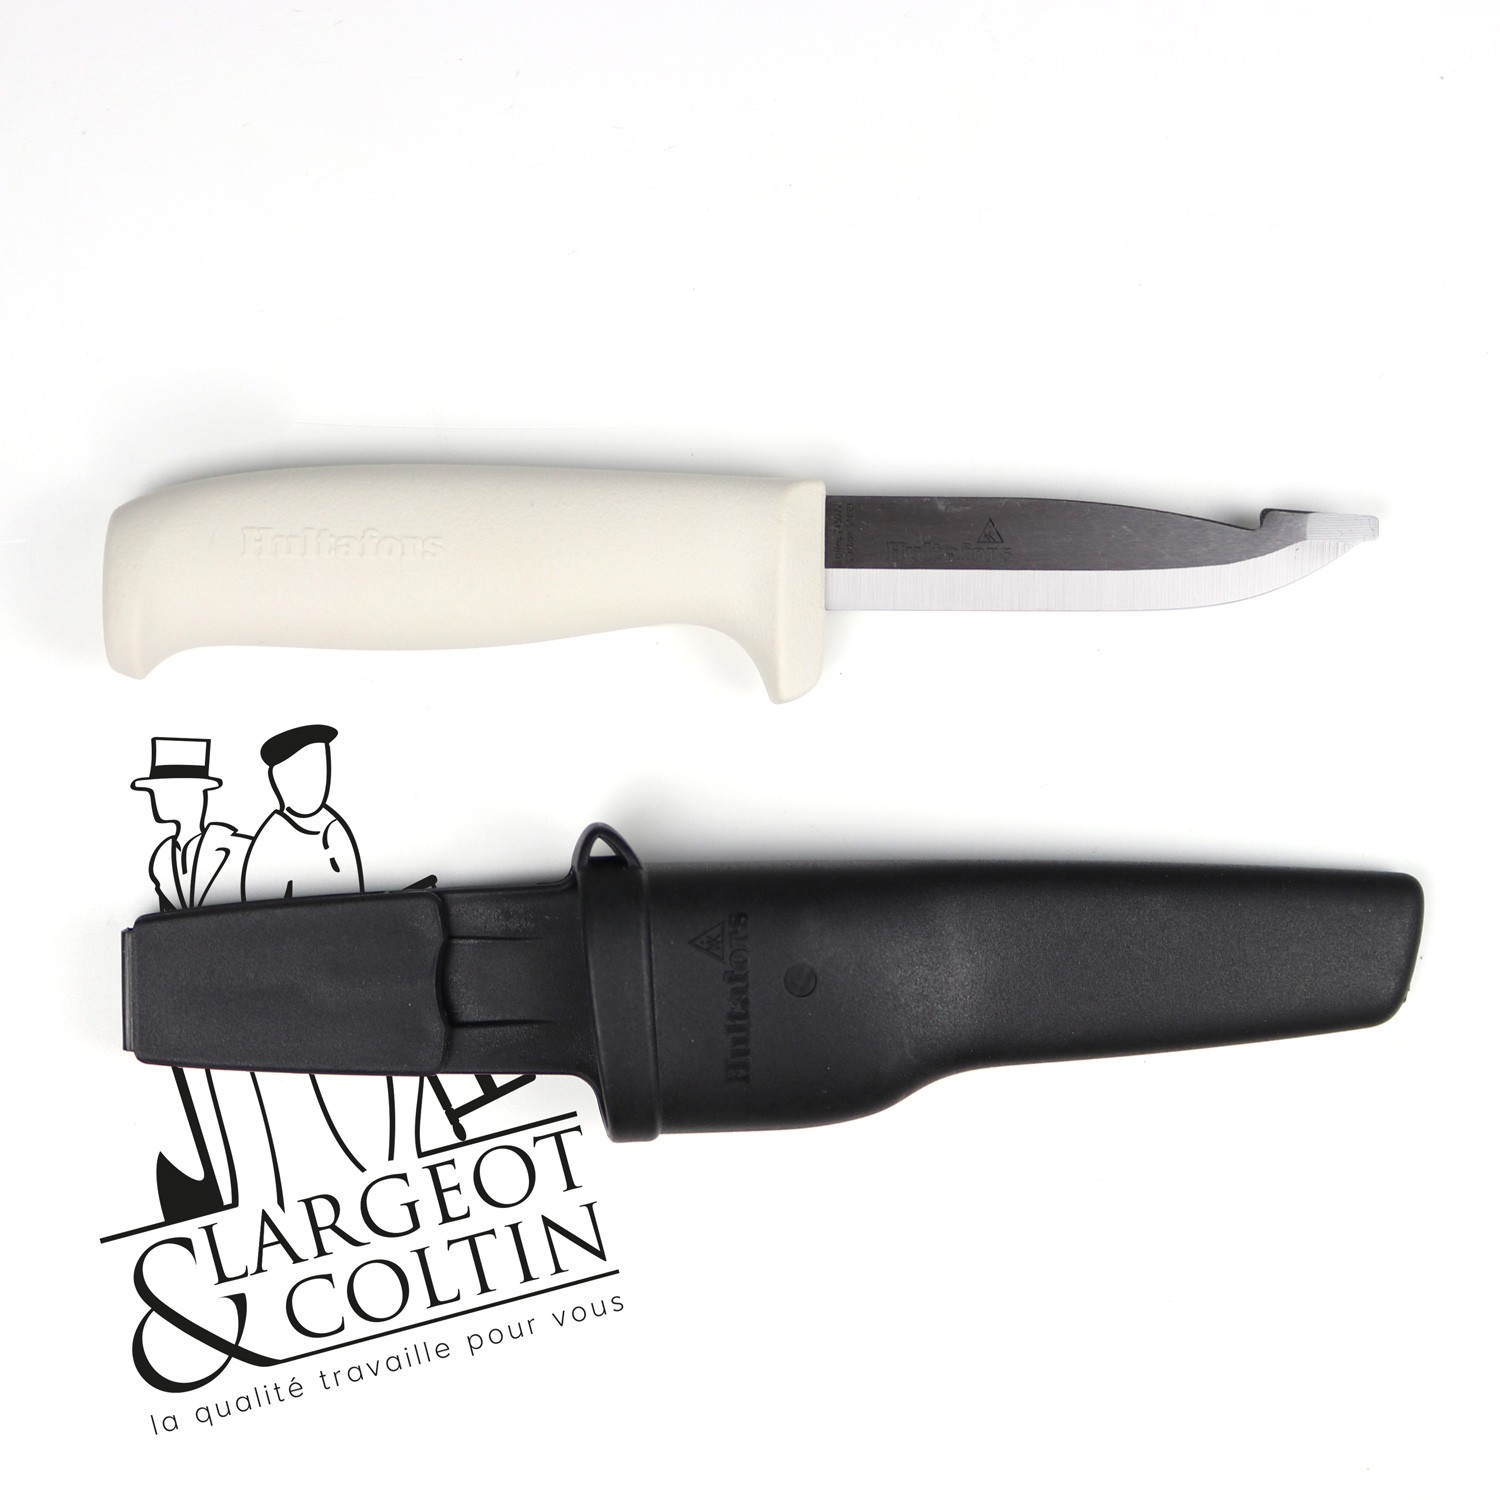 Couteau de peintre MK Hultafors - Largeot et Coltin